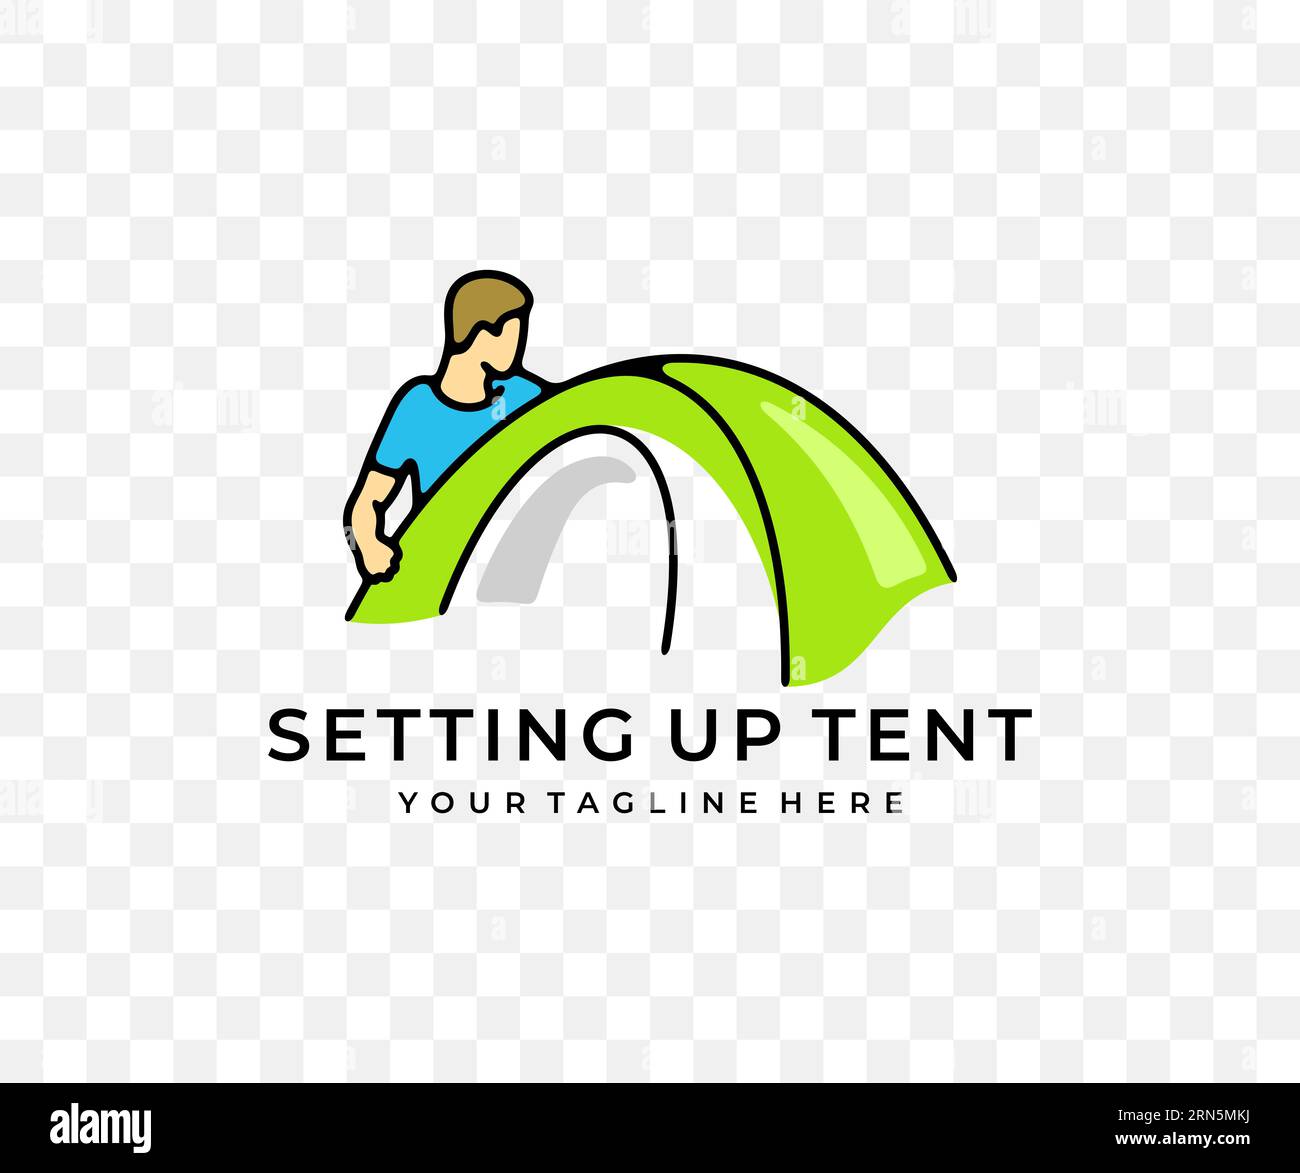 Mann baut Zelt, Camping und Camp auf, farbiges Grafikdesign. Tourismus, Wanderung, Wandern, Natur- und Campingausflug, Vektordesign und Illustration Stock Vektor